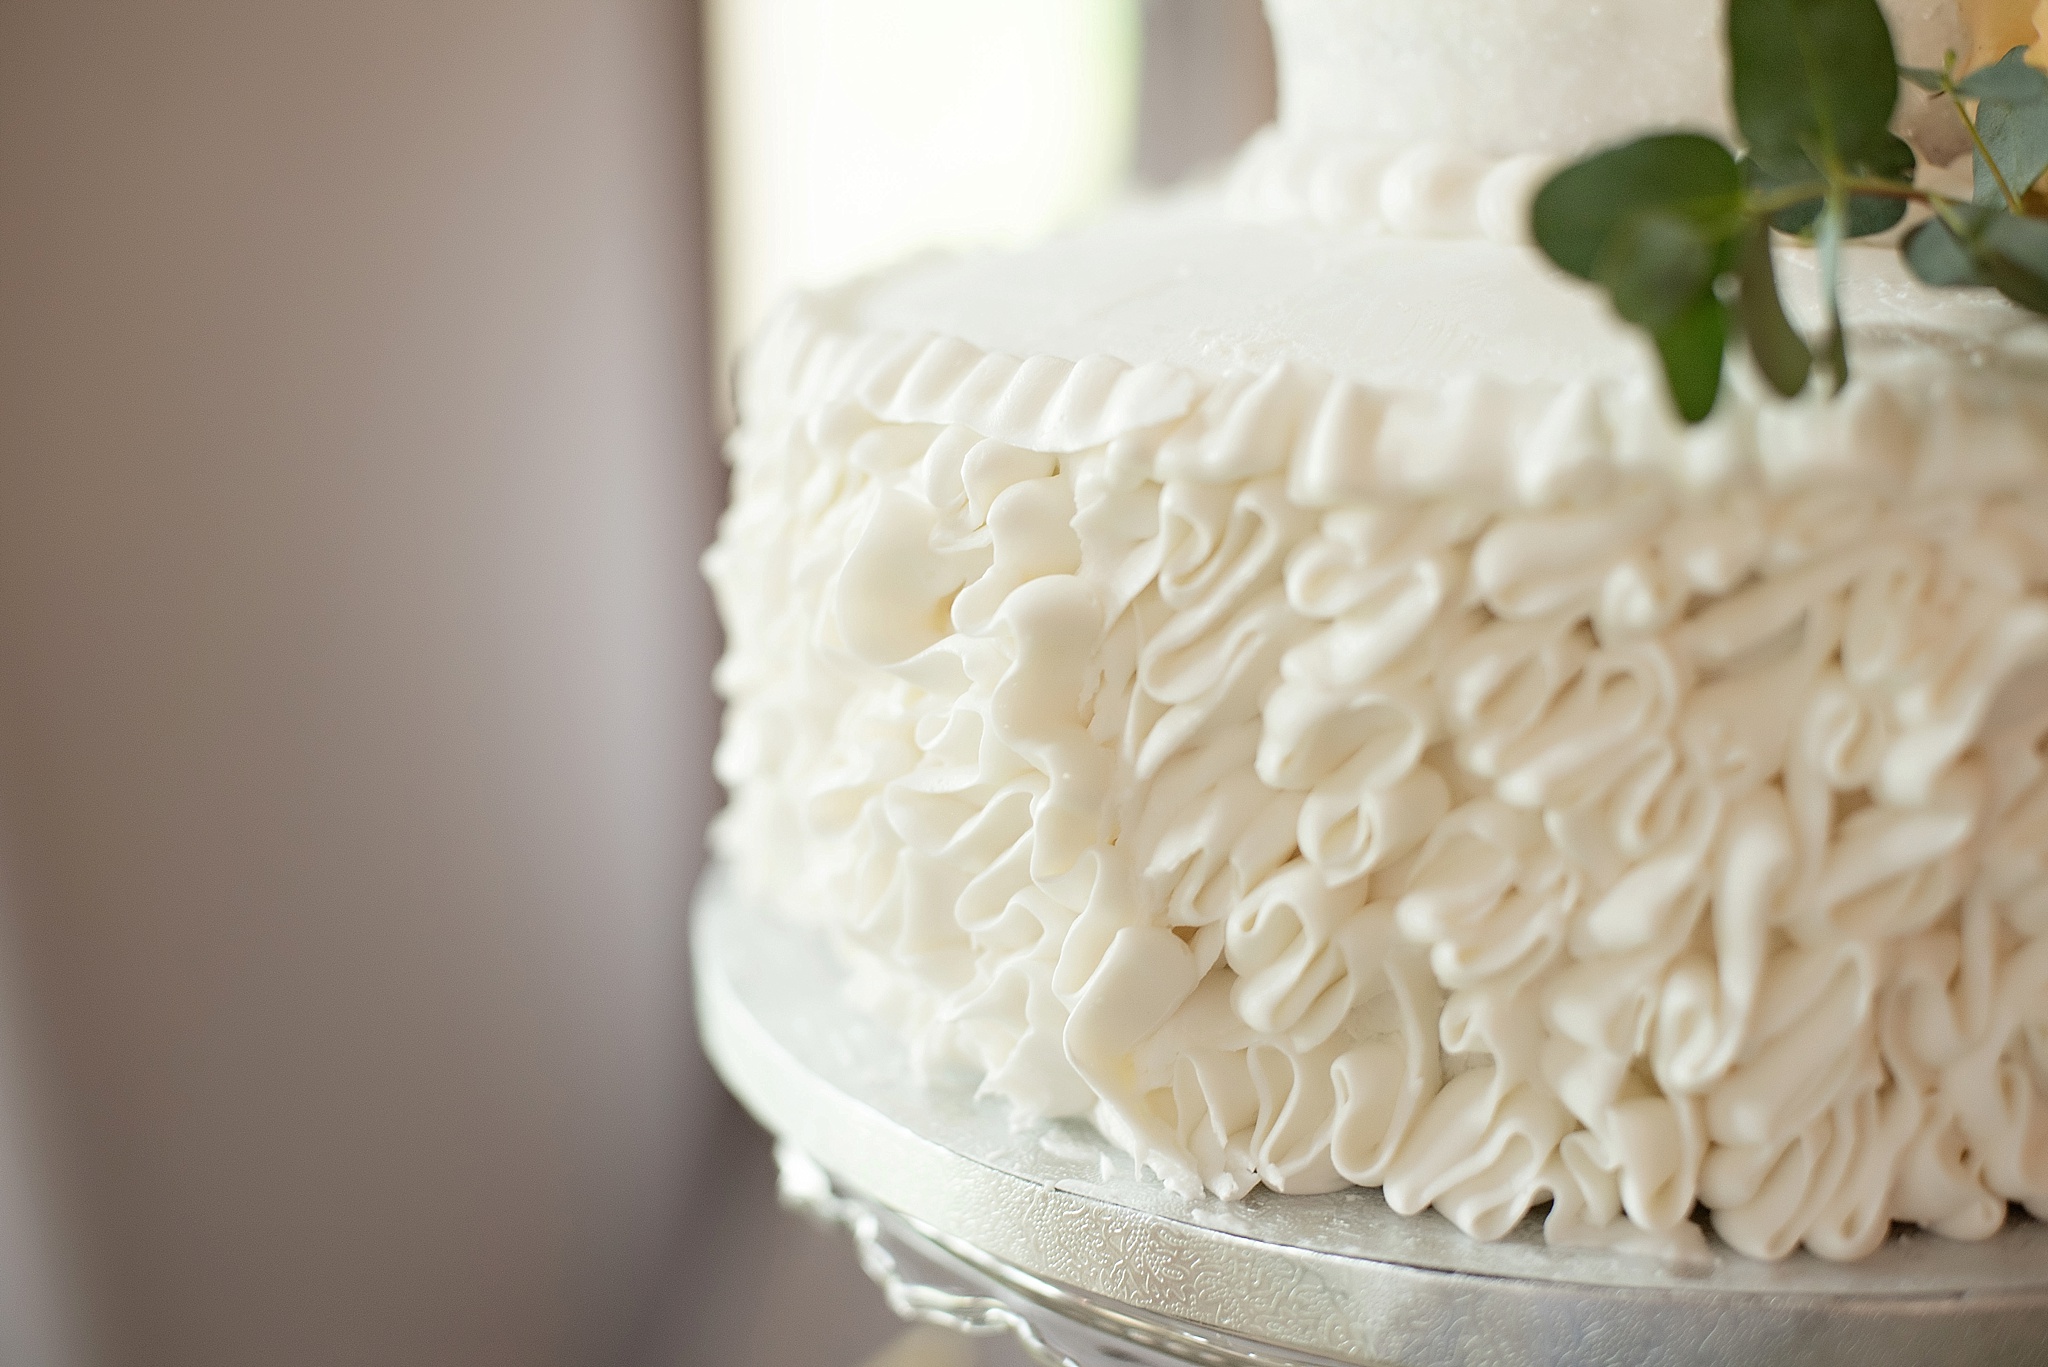 ruffle frosting on white wedding cake